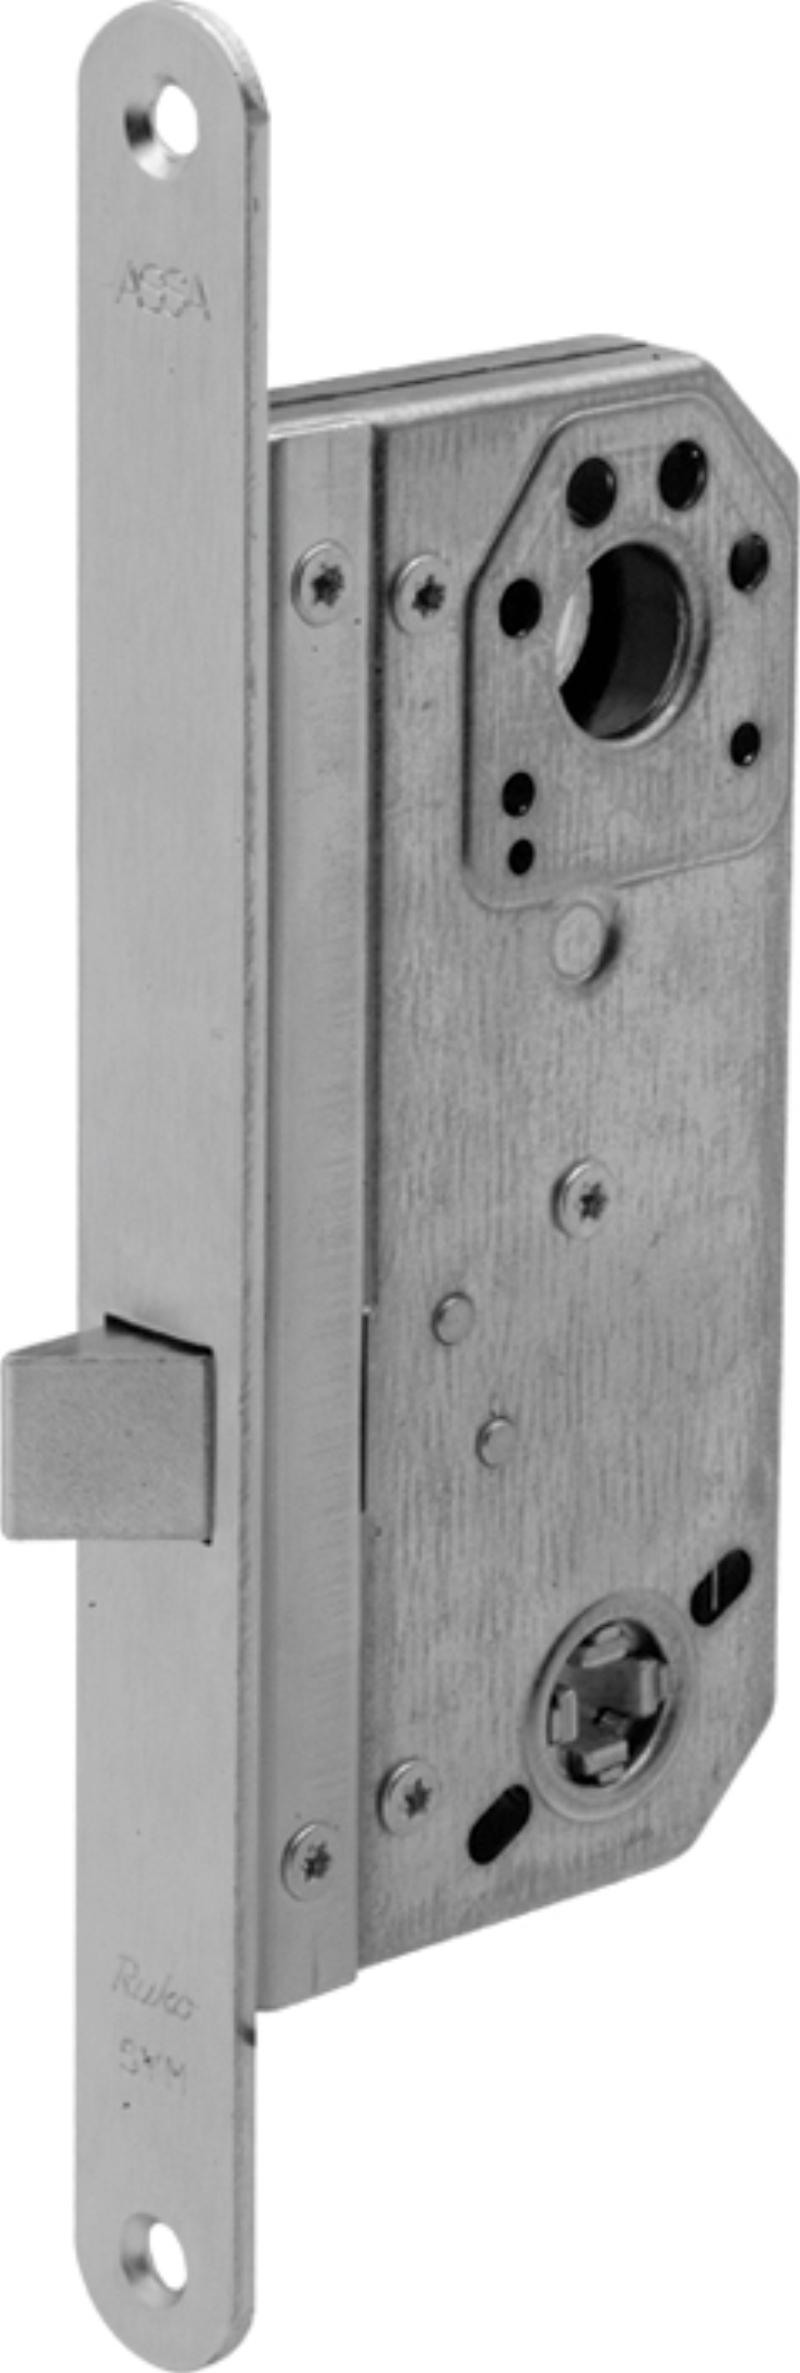 Assa lock box 1498